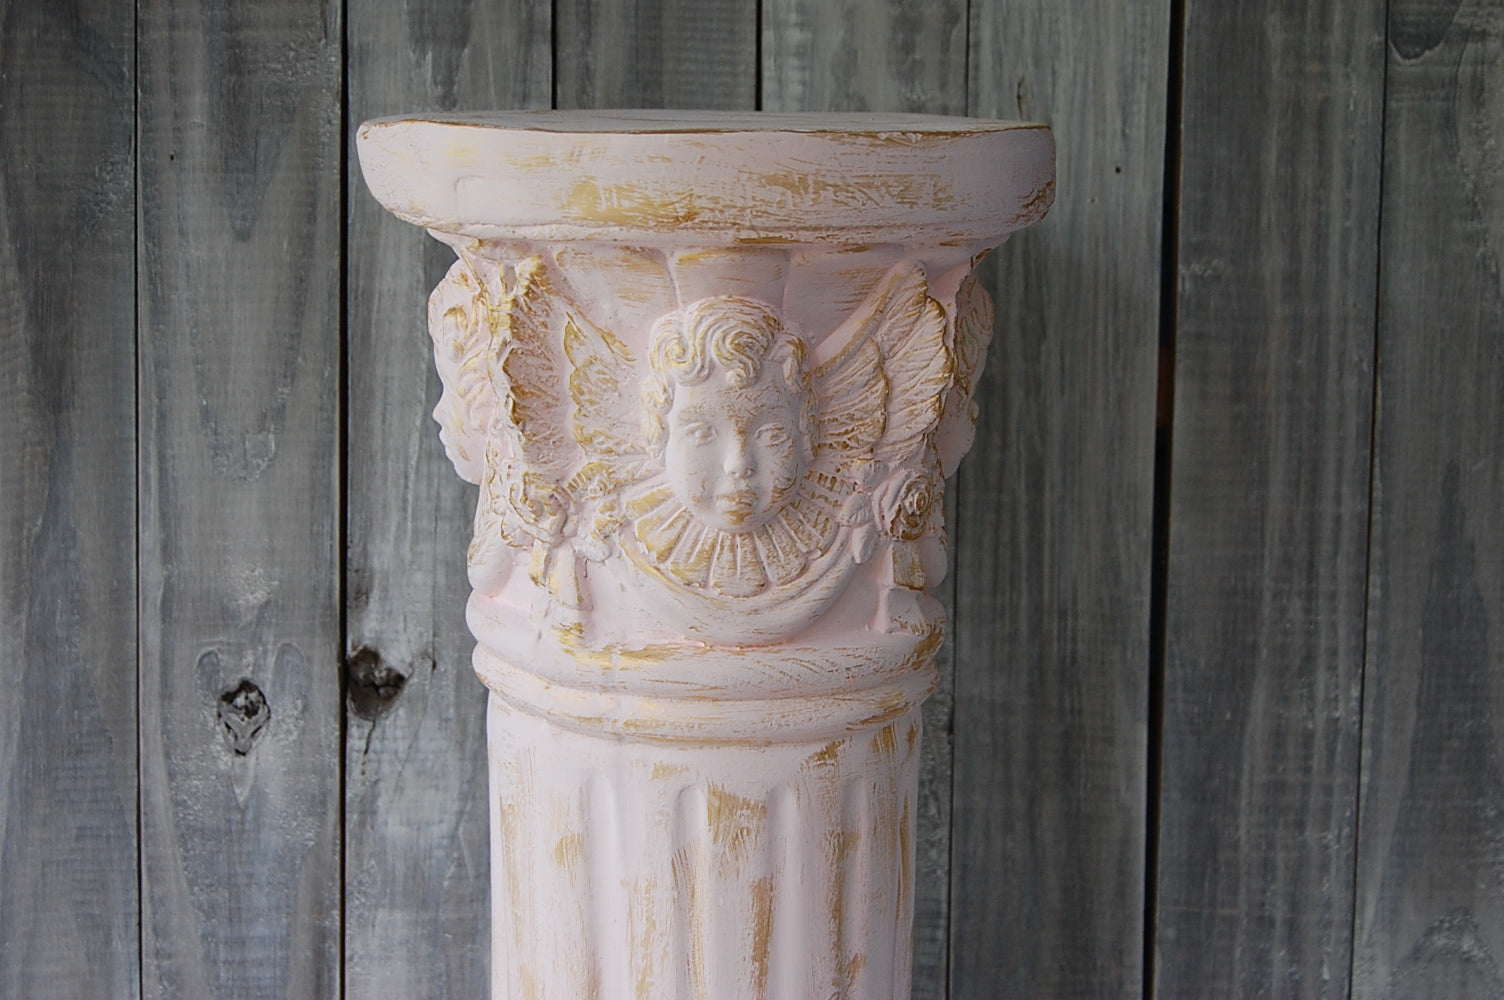 Pink cherub pedestal - The Vintage Artistry